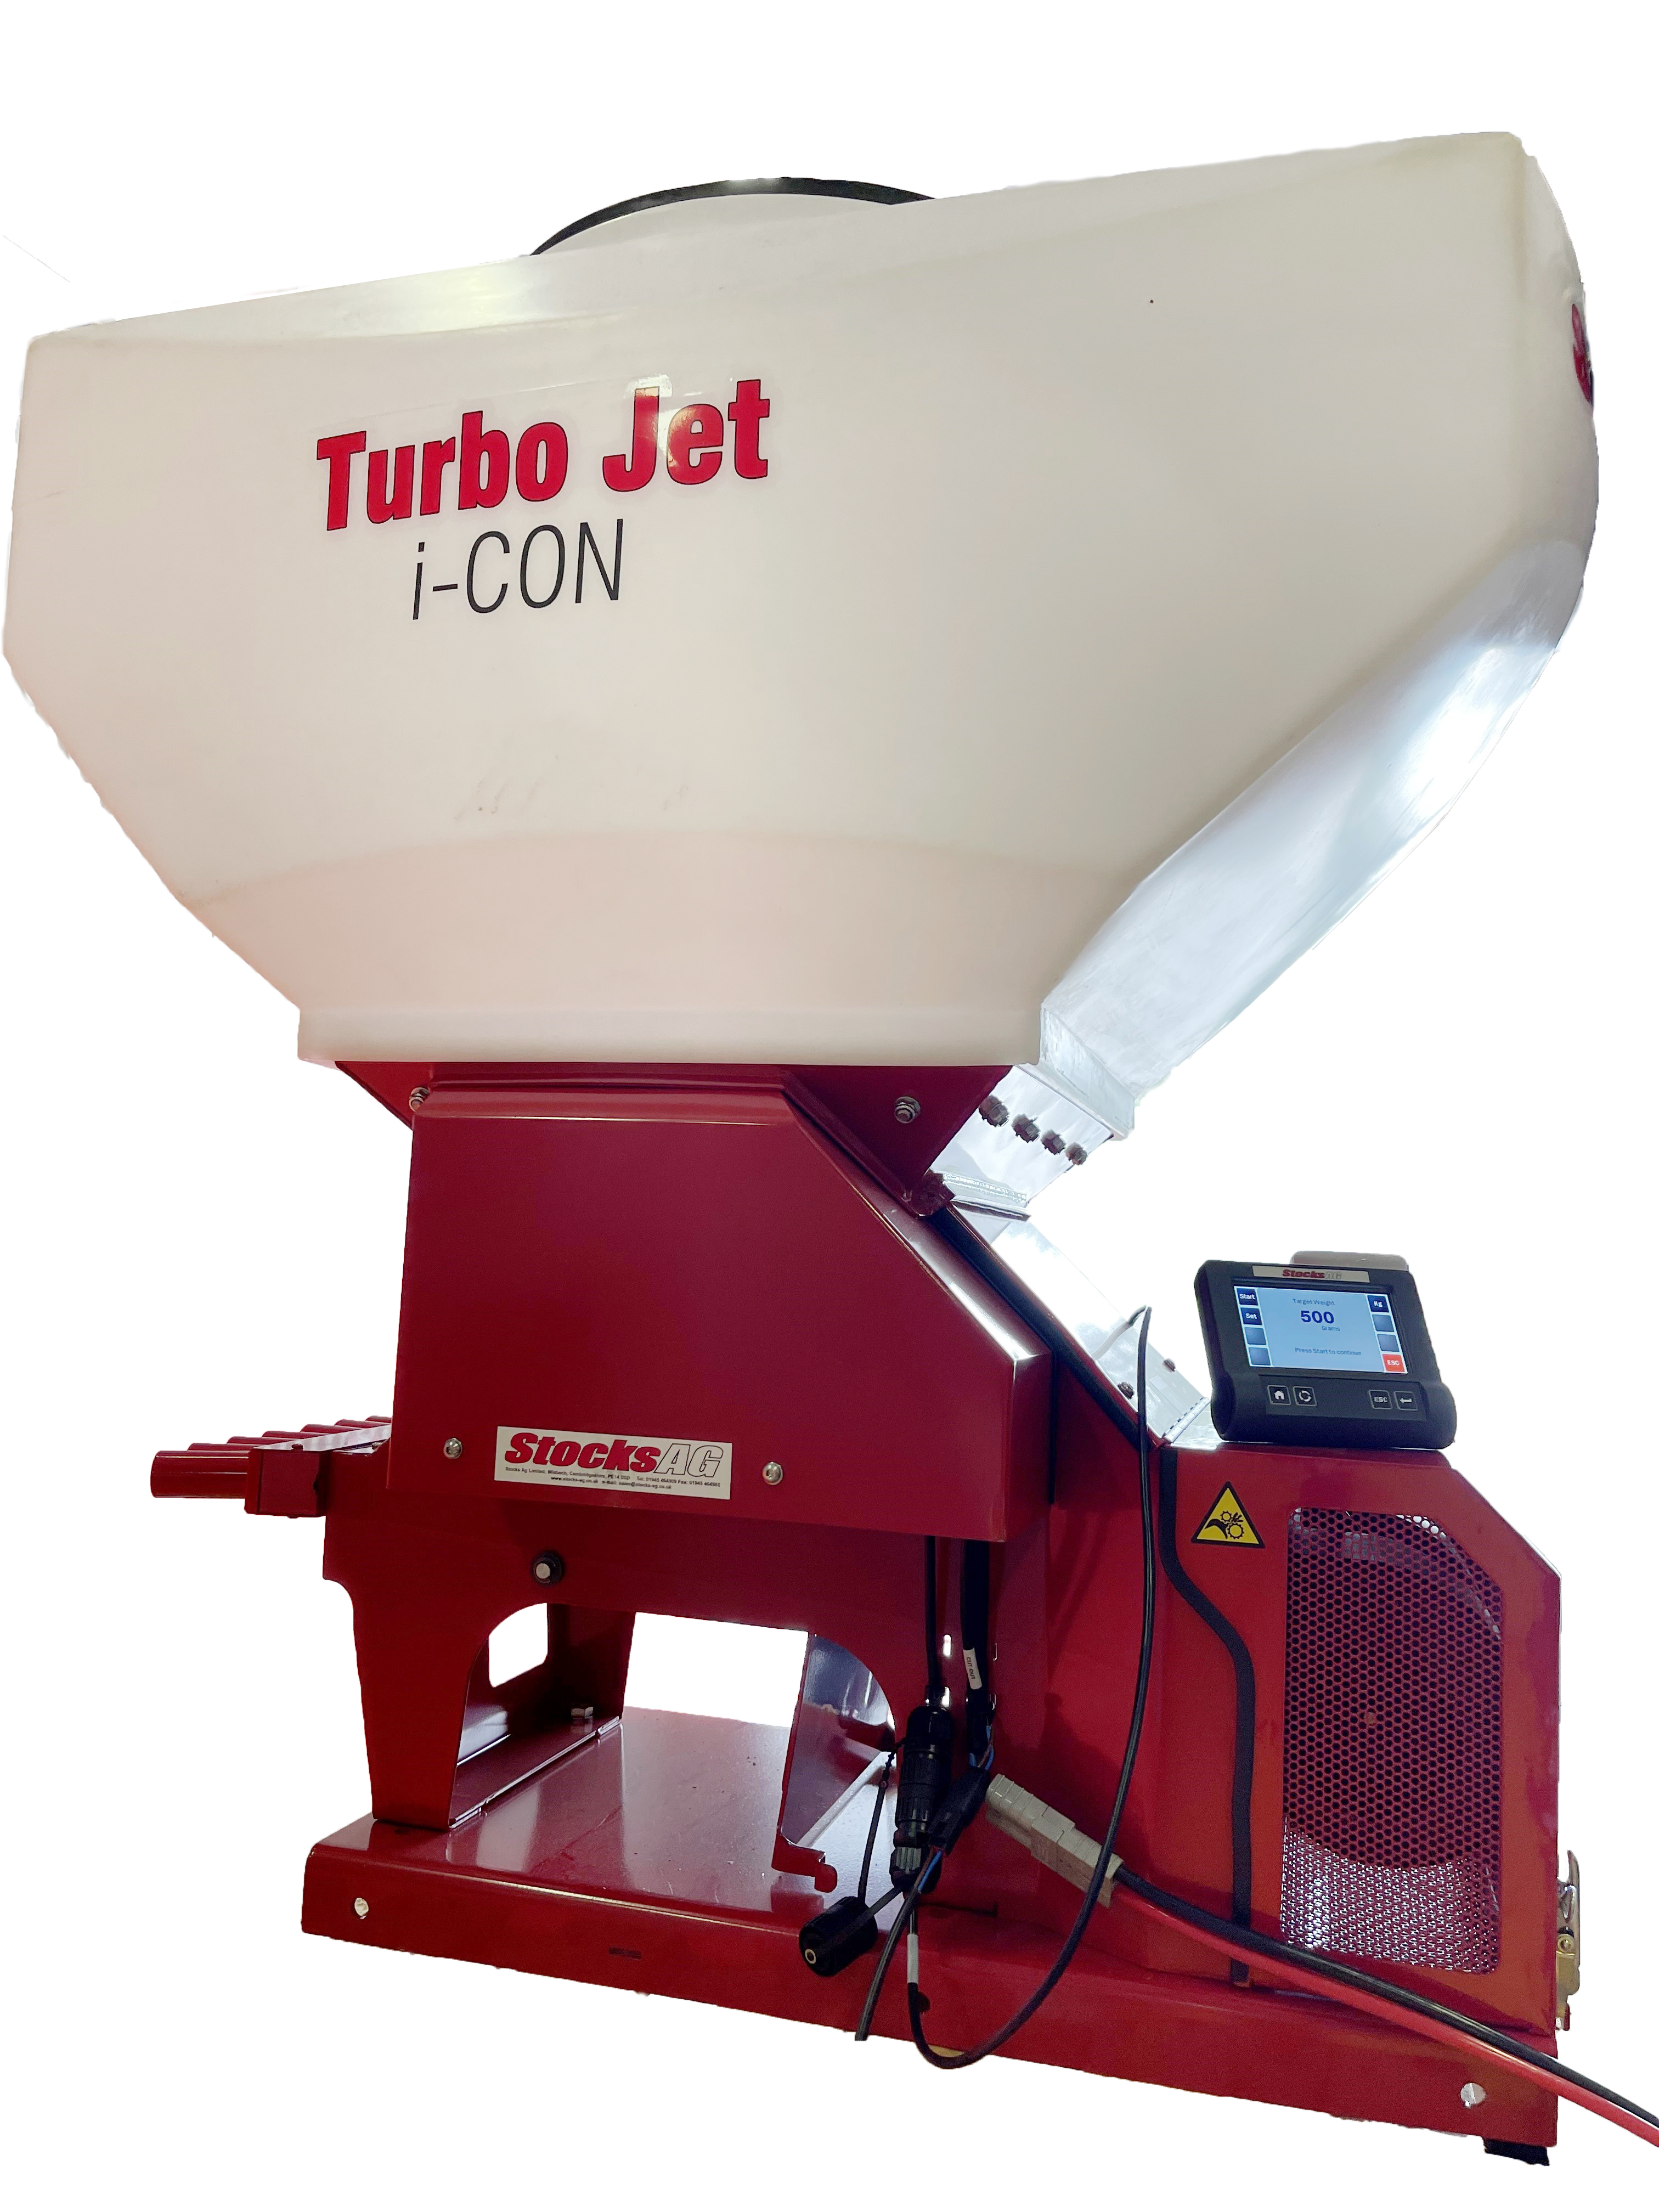 Piensiemenkylvökone Turbo Jet 8 i-CON